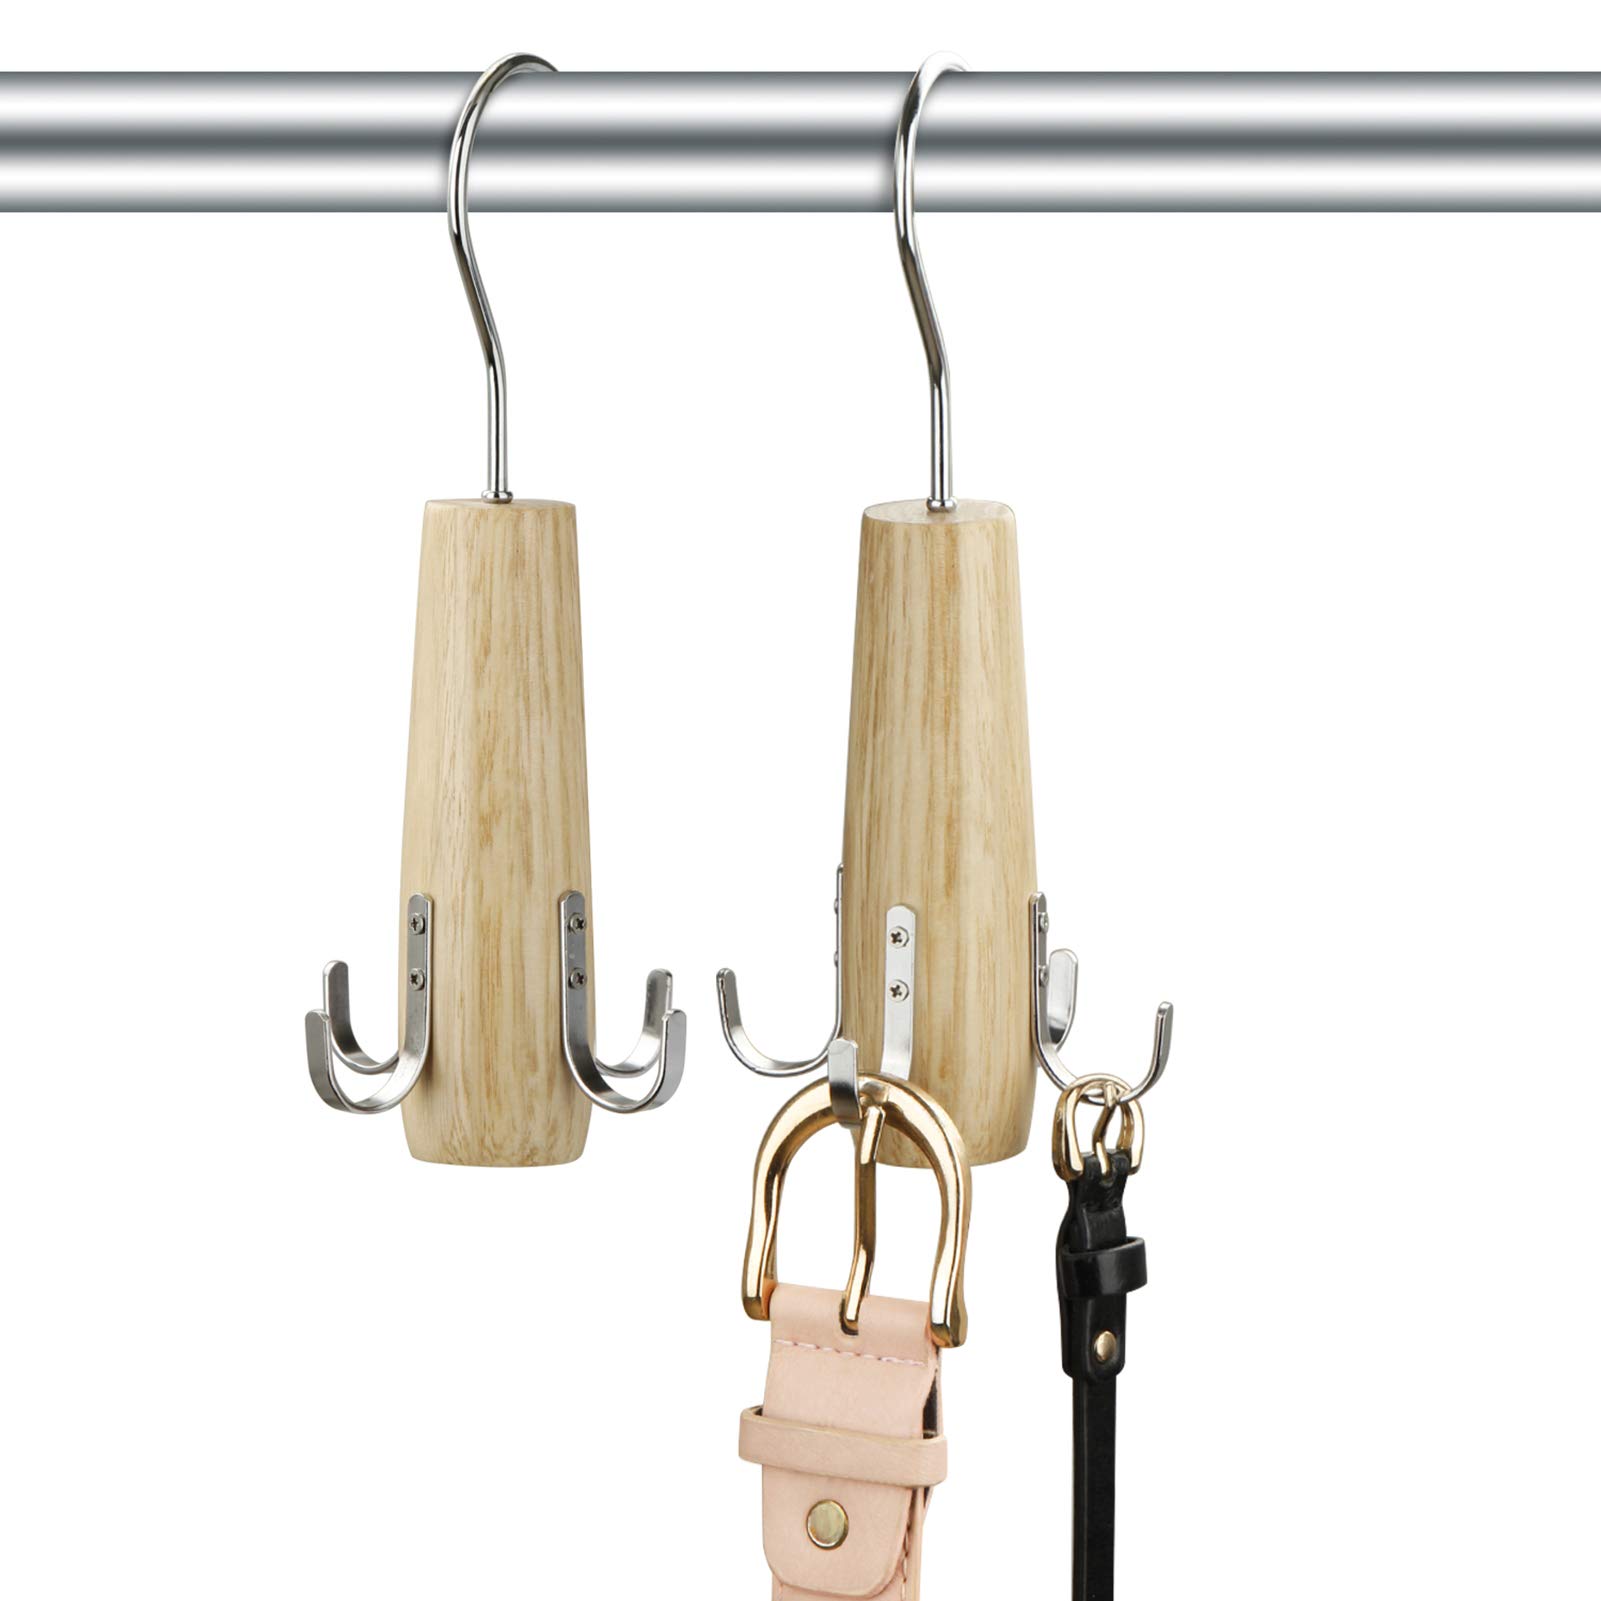 HuaQi Belt Hanger Belt Racks Wooden Closet Accessories